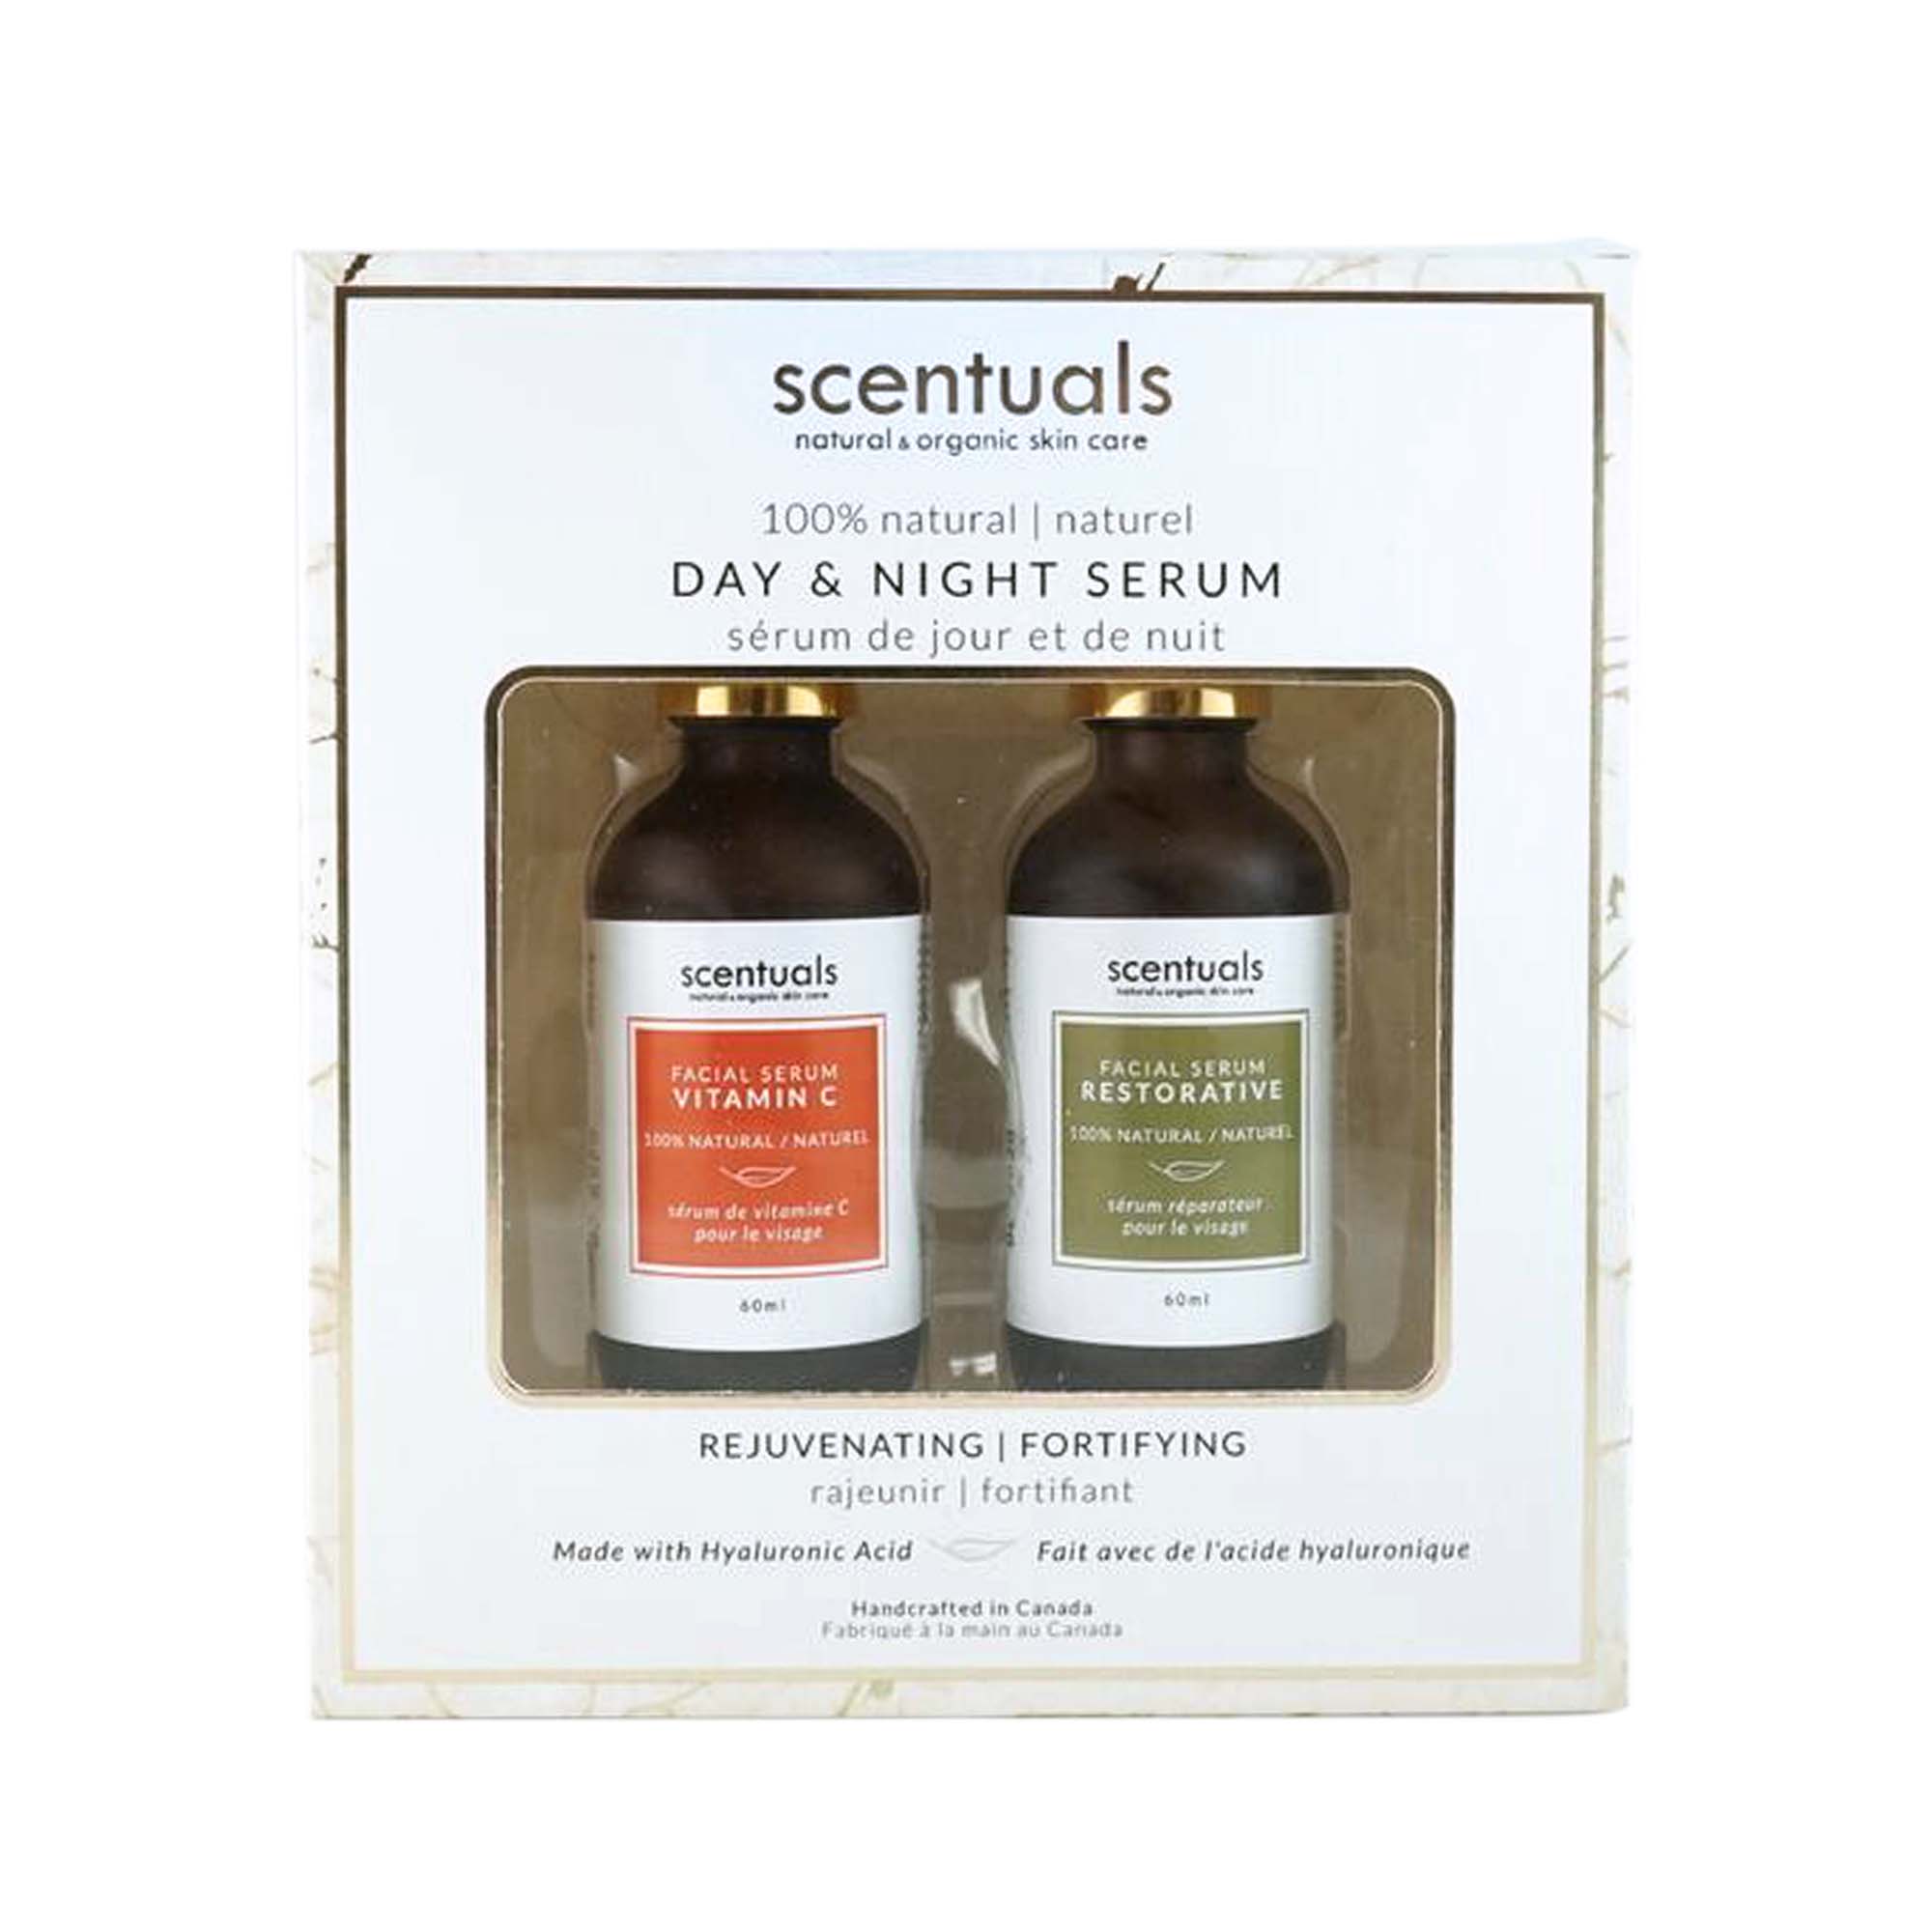 Day & Night Serum Duo Gift Set